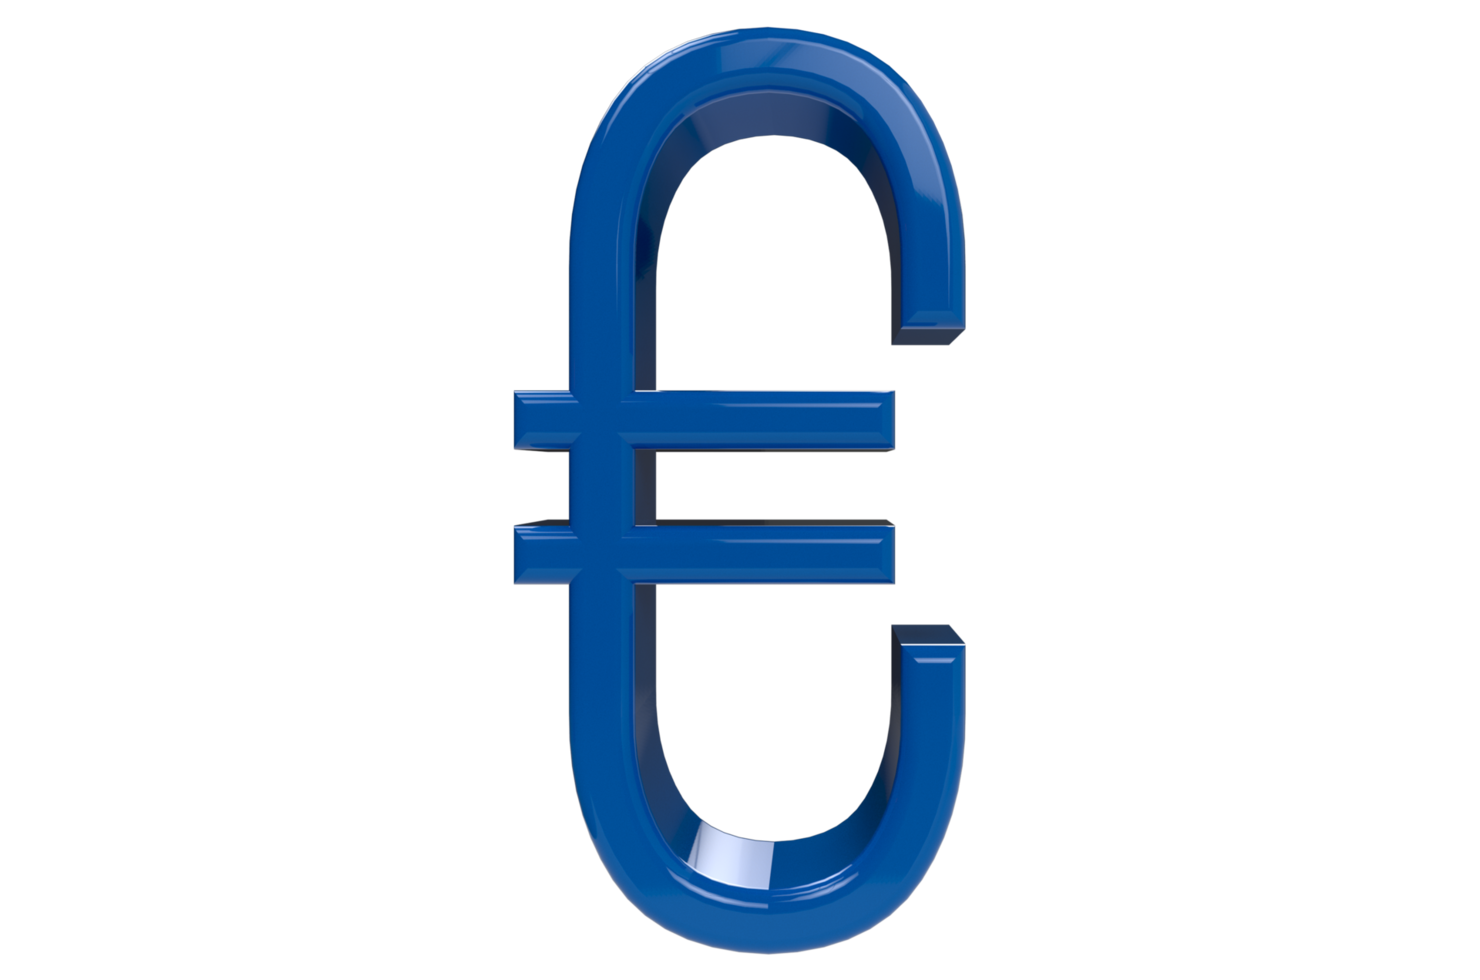 rendu 3d signe euro bleu png avec fond transparent